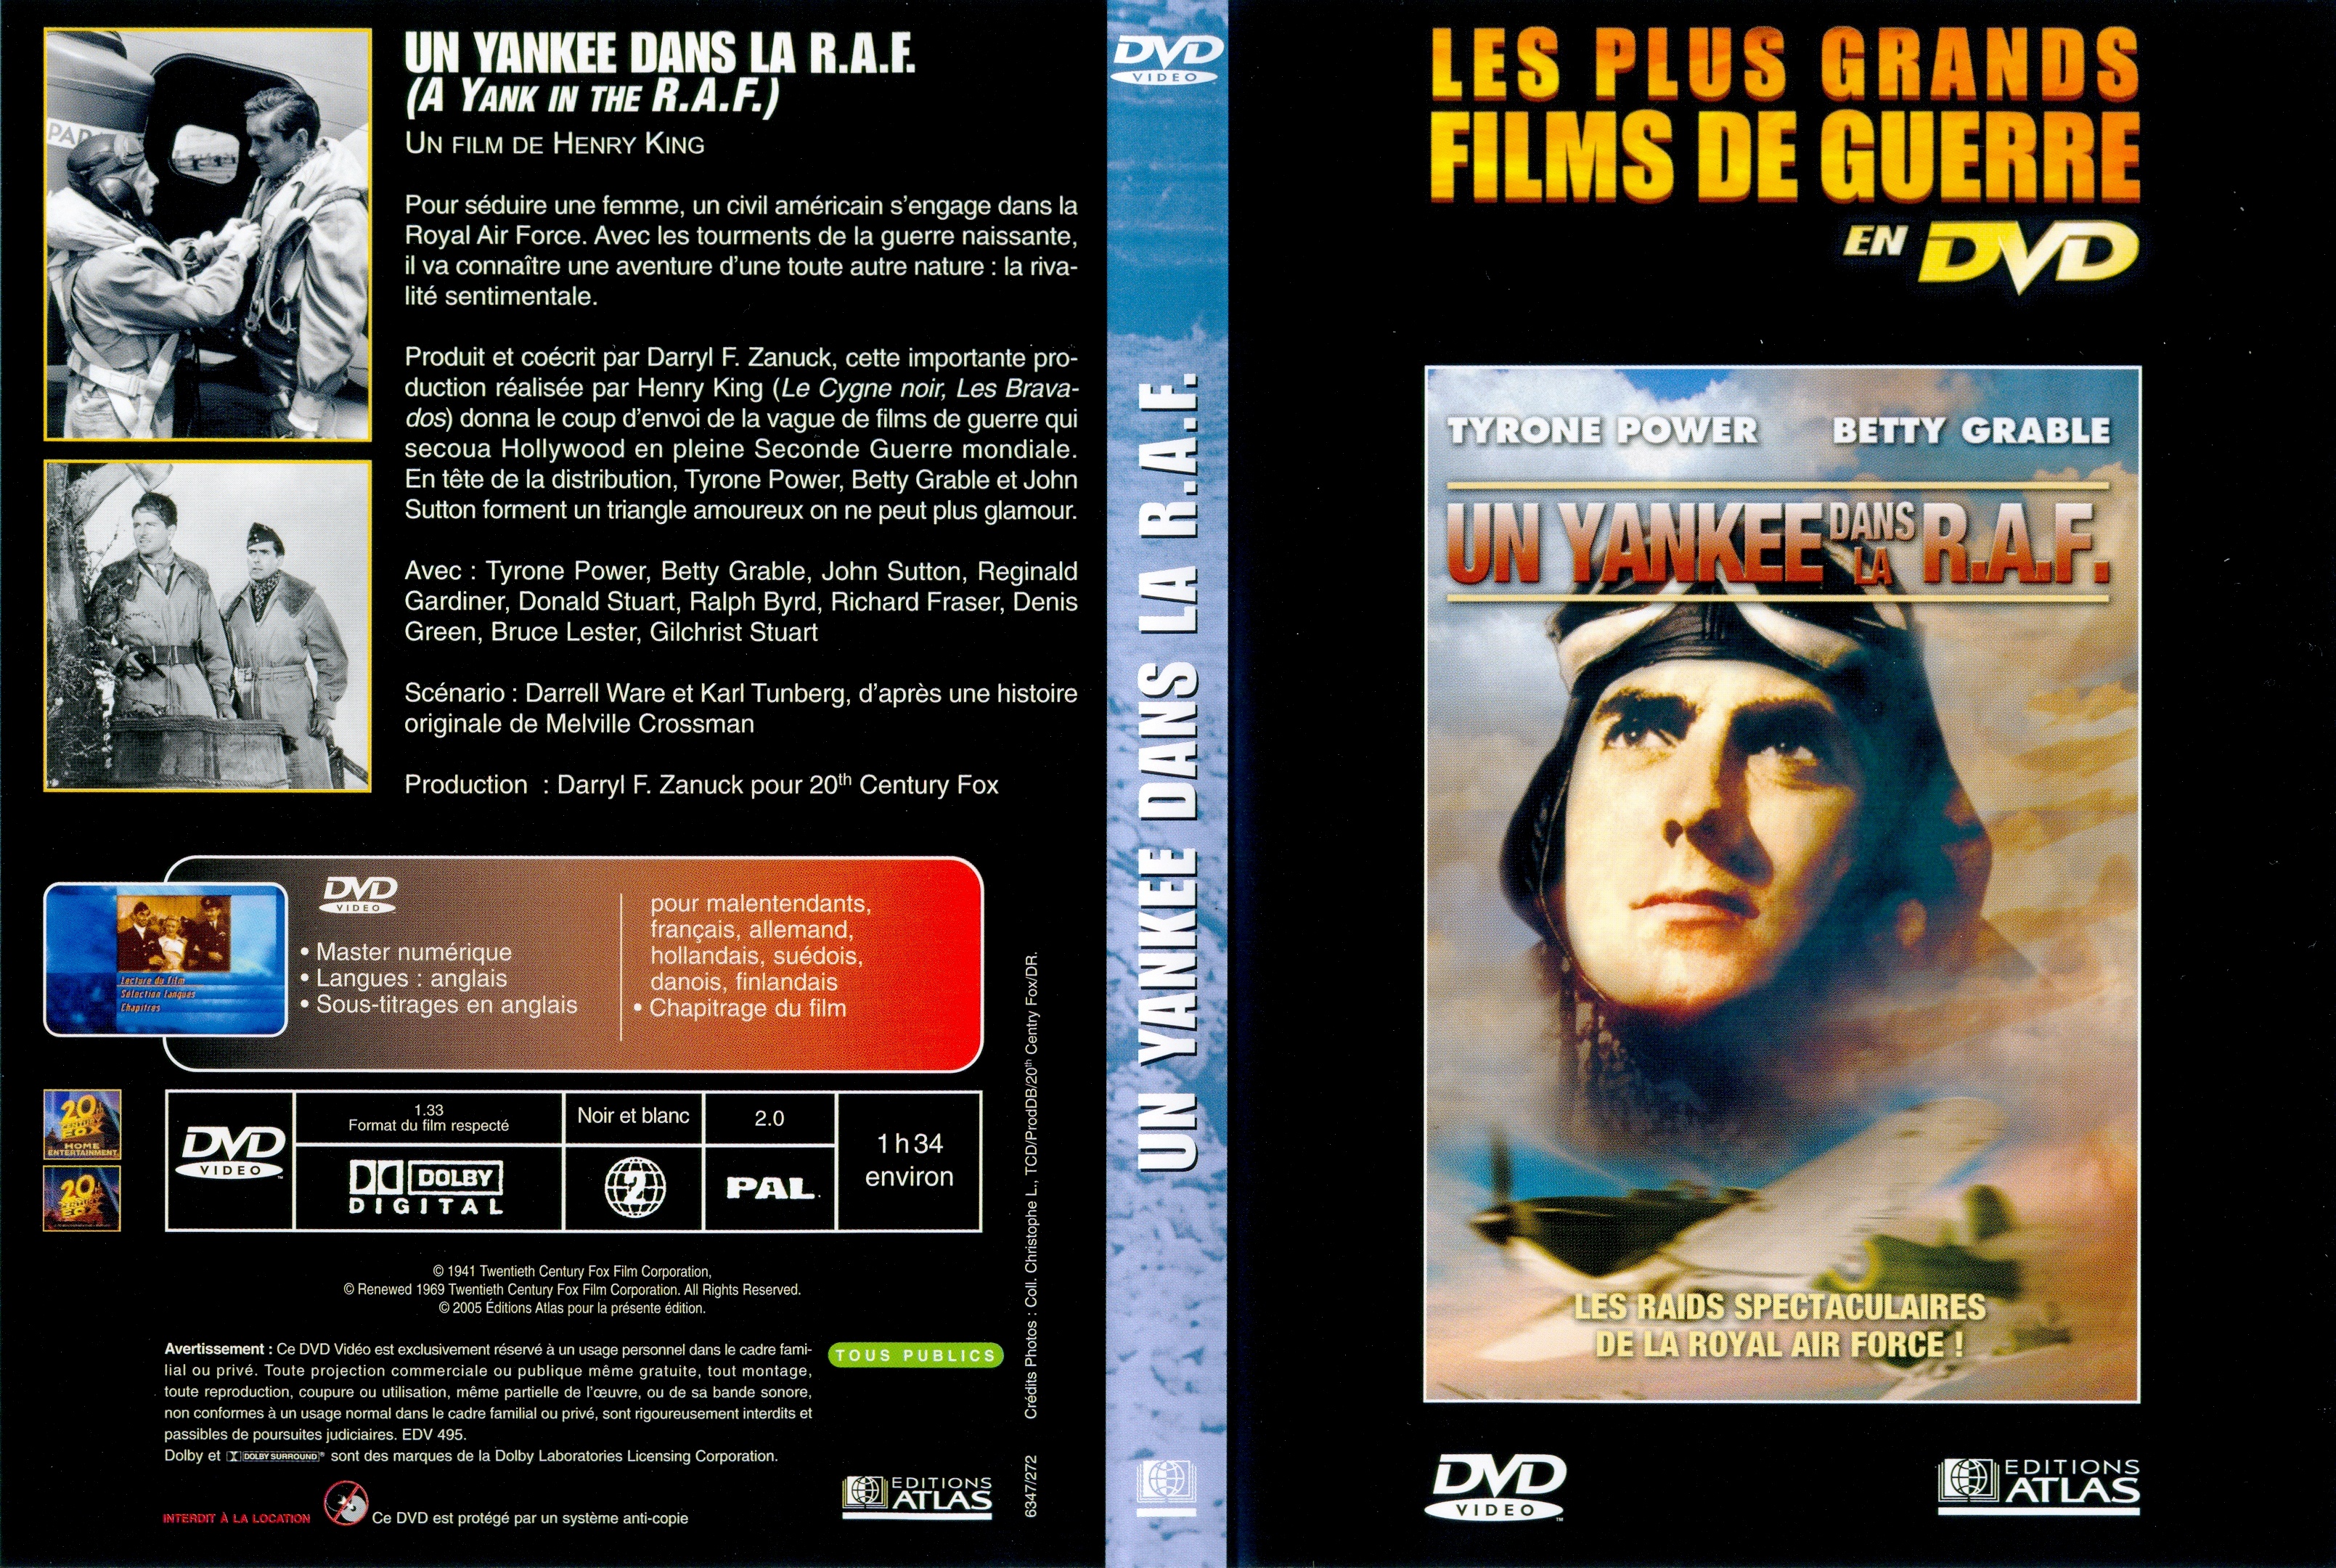 Jaquette DVD Un yankee dans la R.A.F